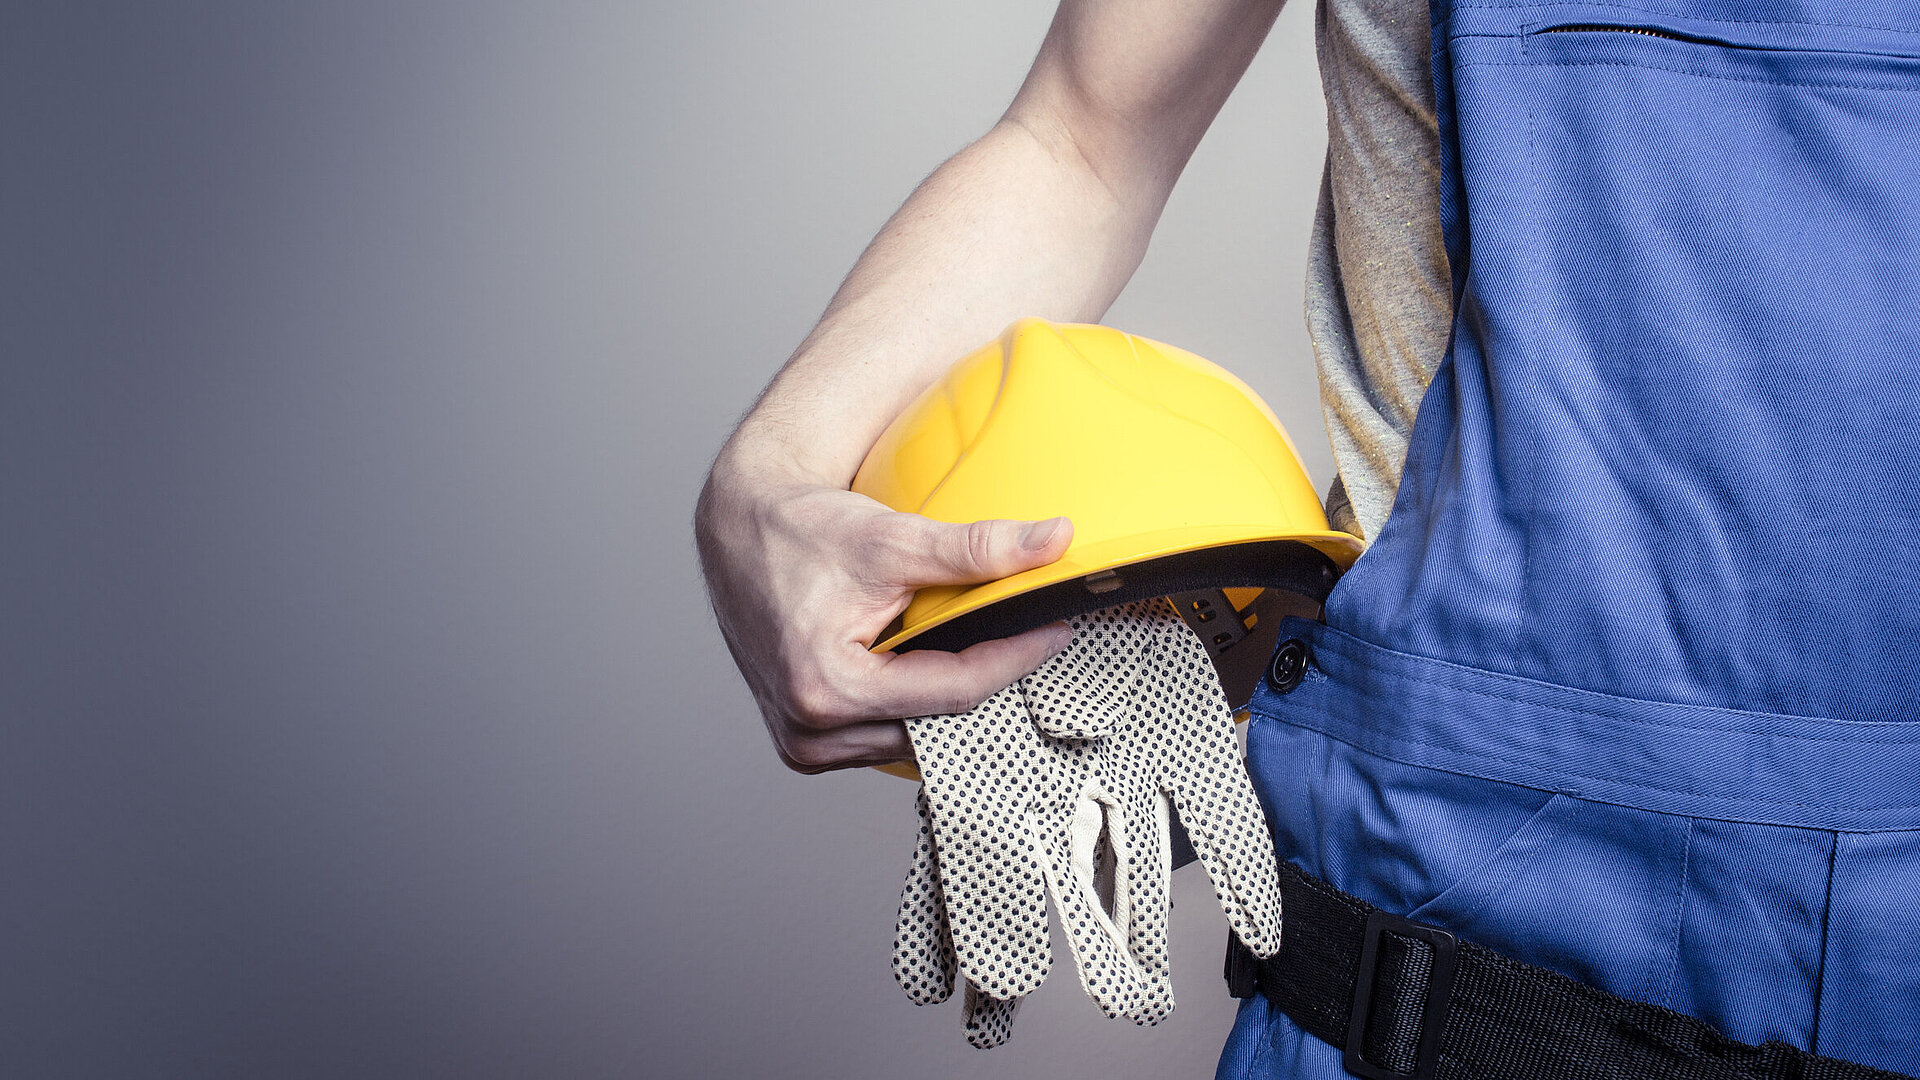 Eine Person in blauer Latzhose hält einen gelben Sicherheitshelm und Schutzhandschuhe unter den Arm geklemmt. Das Bild steht symbolisch für den Bereich Arbeitsschutz und Schutzausrüstung.